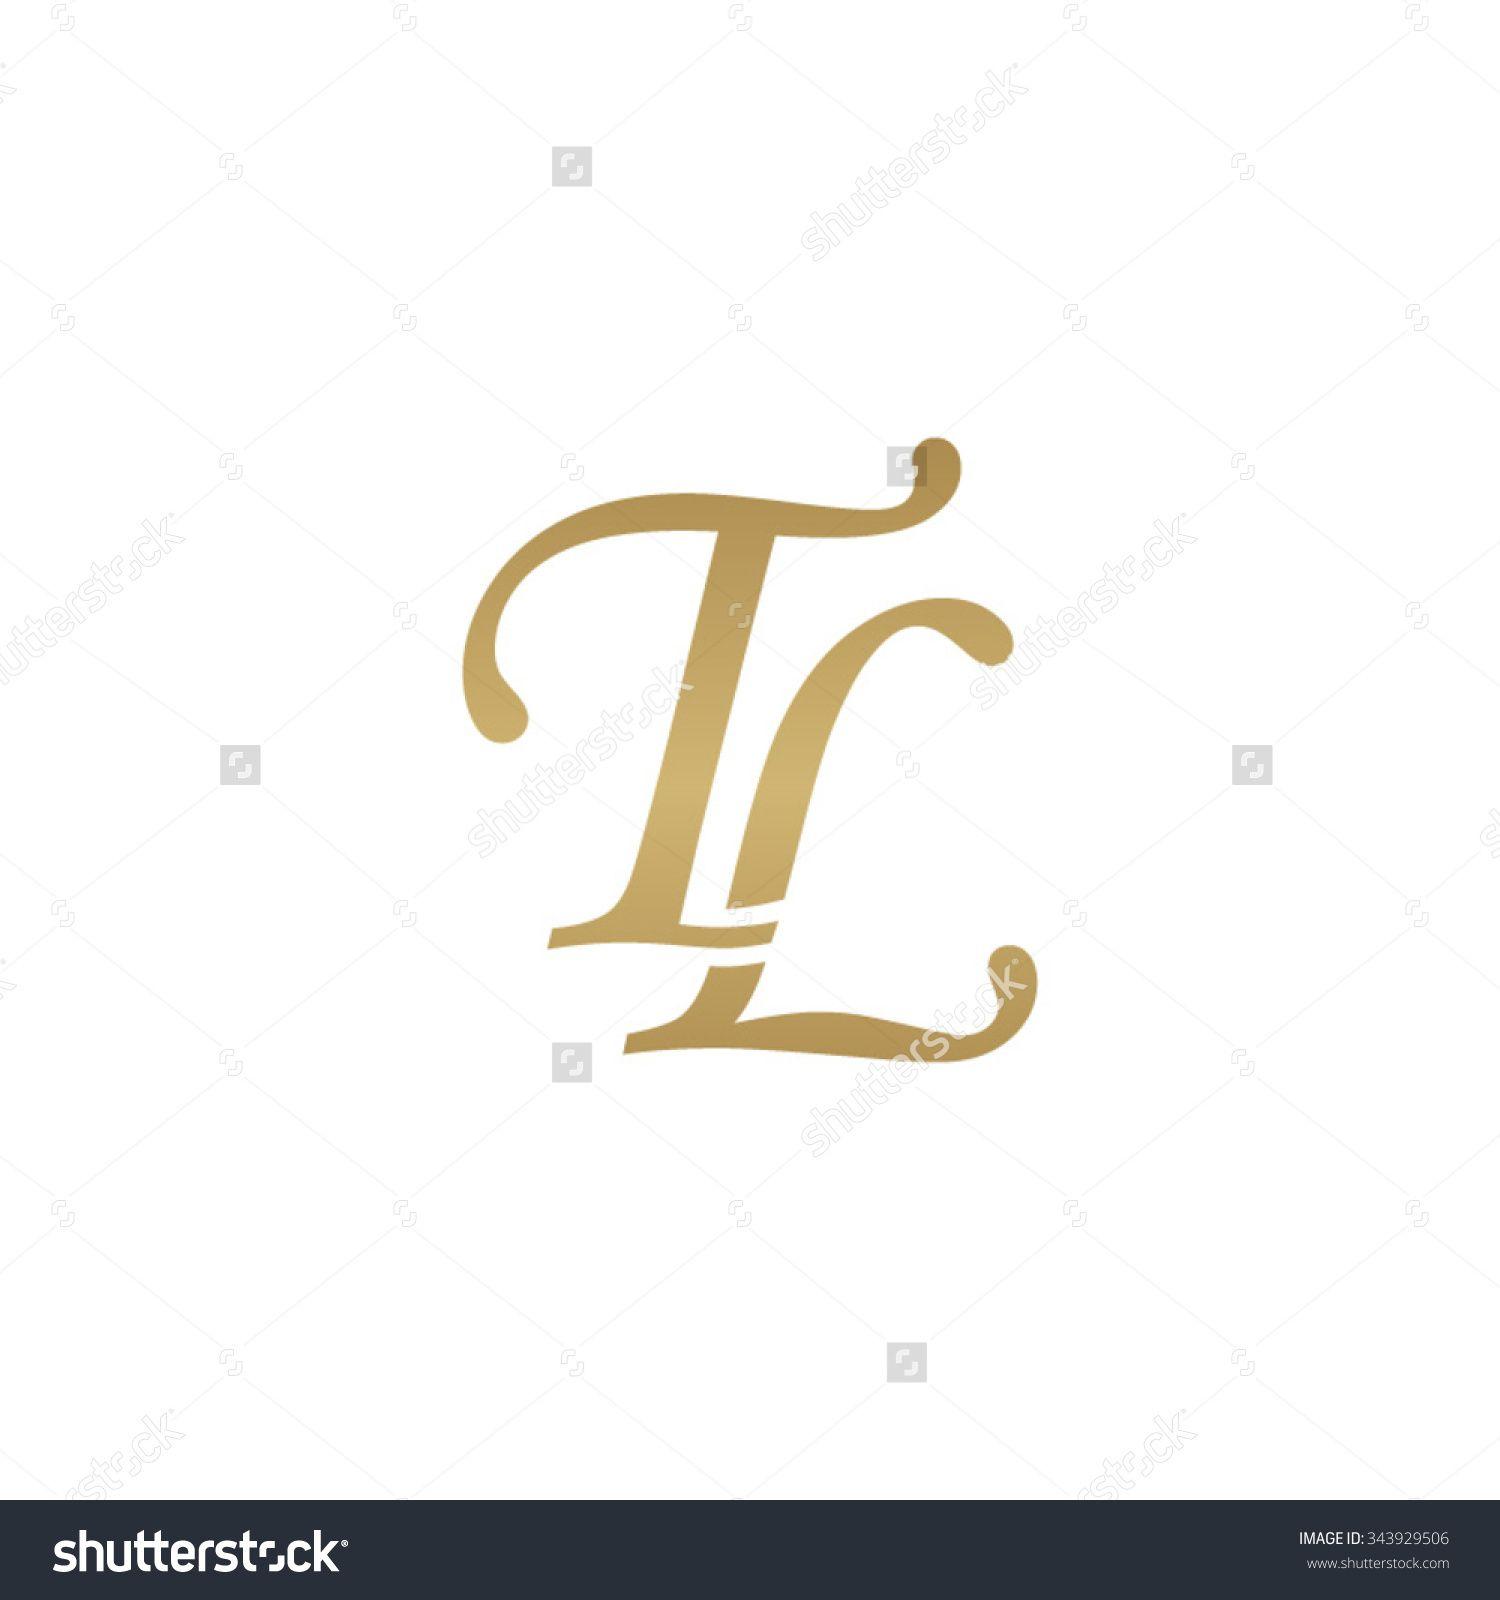 TL Logo - Image result for tl logo | tl logo | Logos, Design